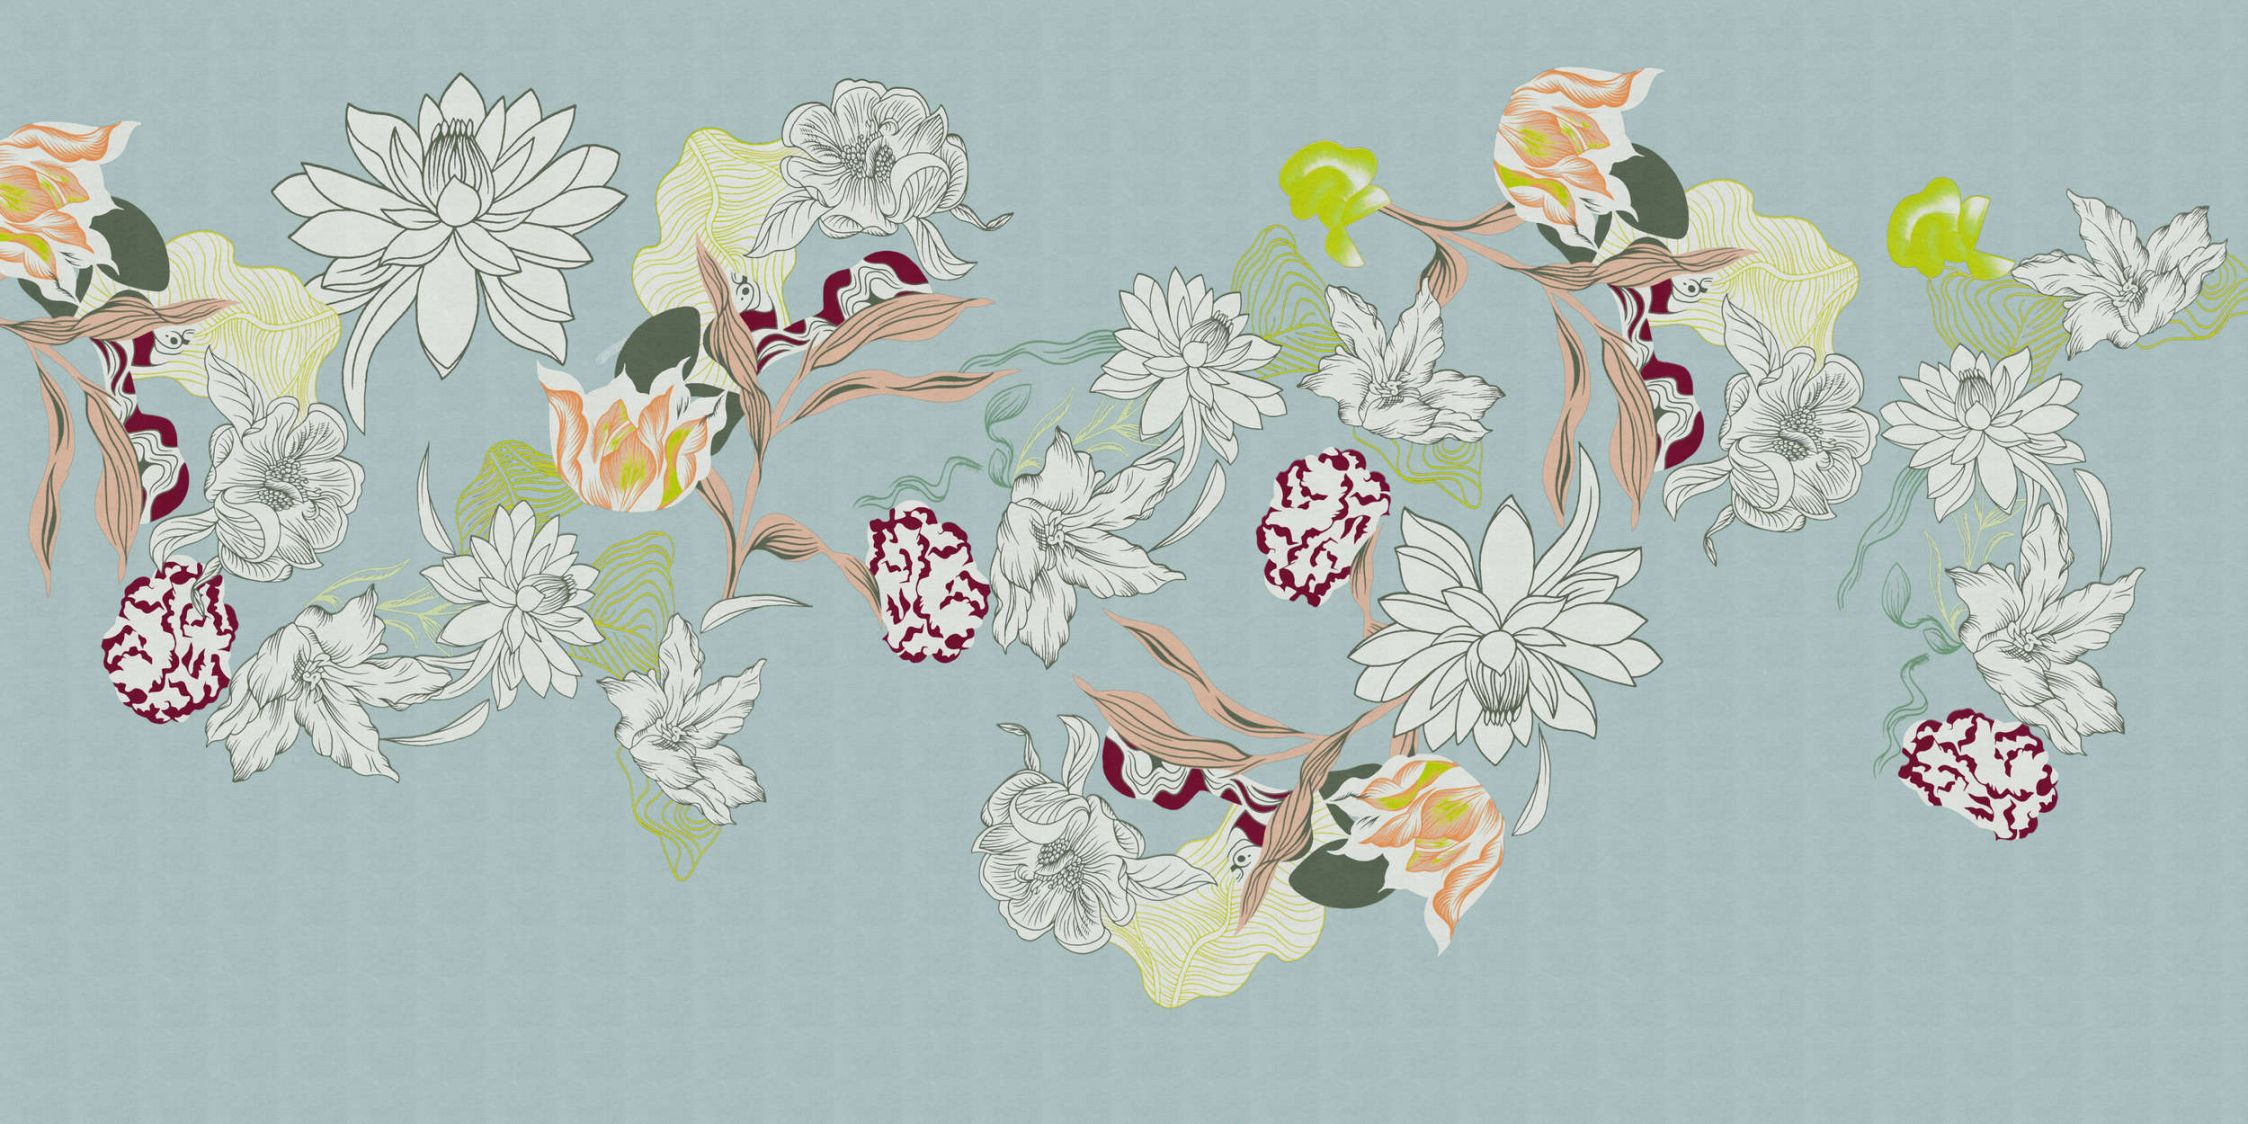             Papel pintado »botany 2« - Motivos florales abstractos con toques verdes sobre una sutil textura de lino - Material sin tejer de calidad superior, liso y ligeramente brillante.
        